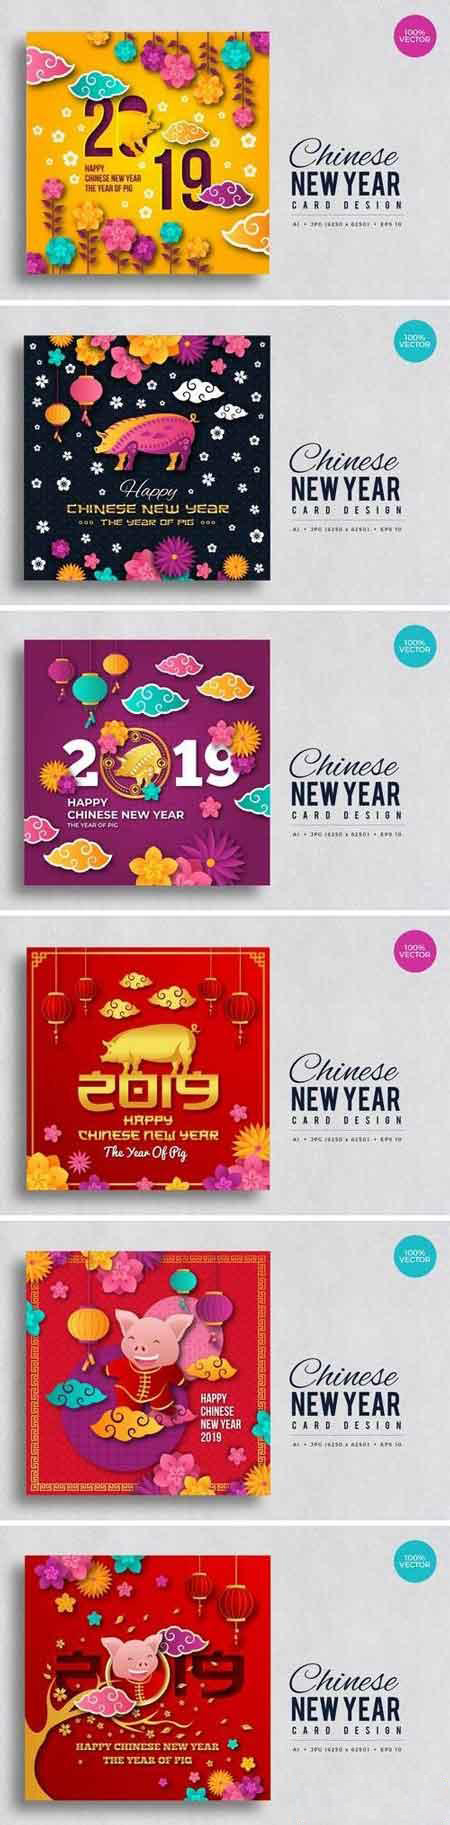 中国农历新年猪年矢量图案集 Chinese Lunar New Year Year Of The Pig Vector Pattern Set插图